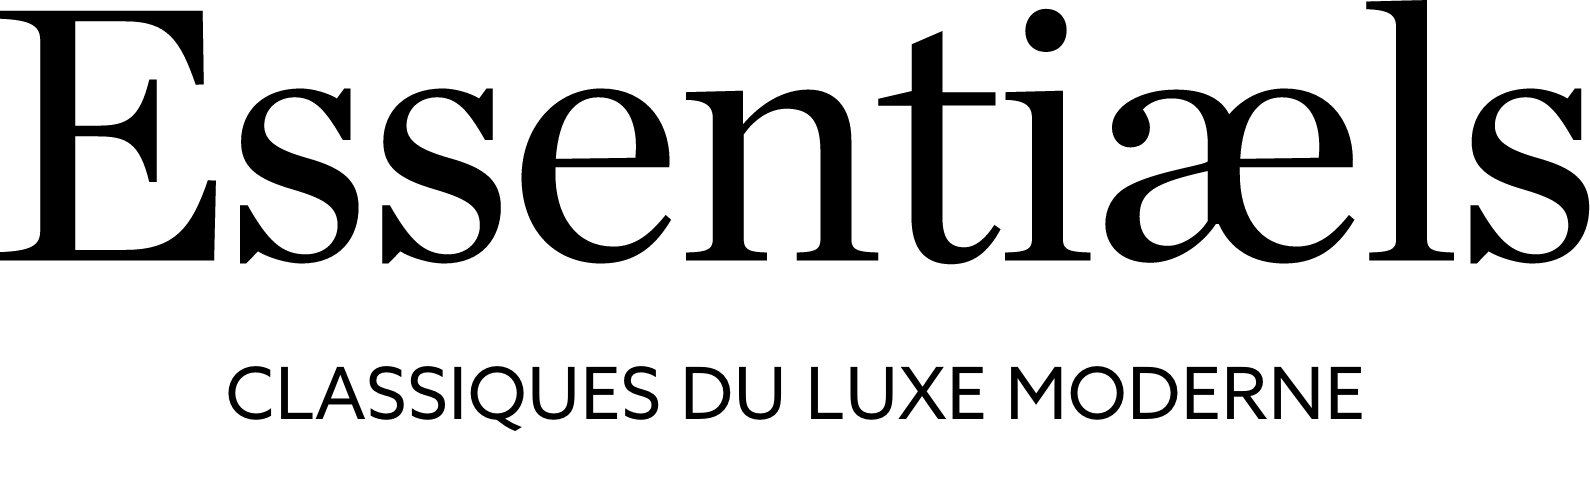 Dynamite Essentiæls logo.